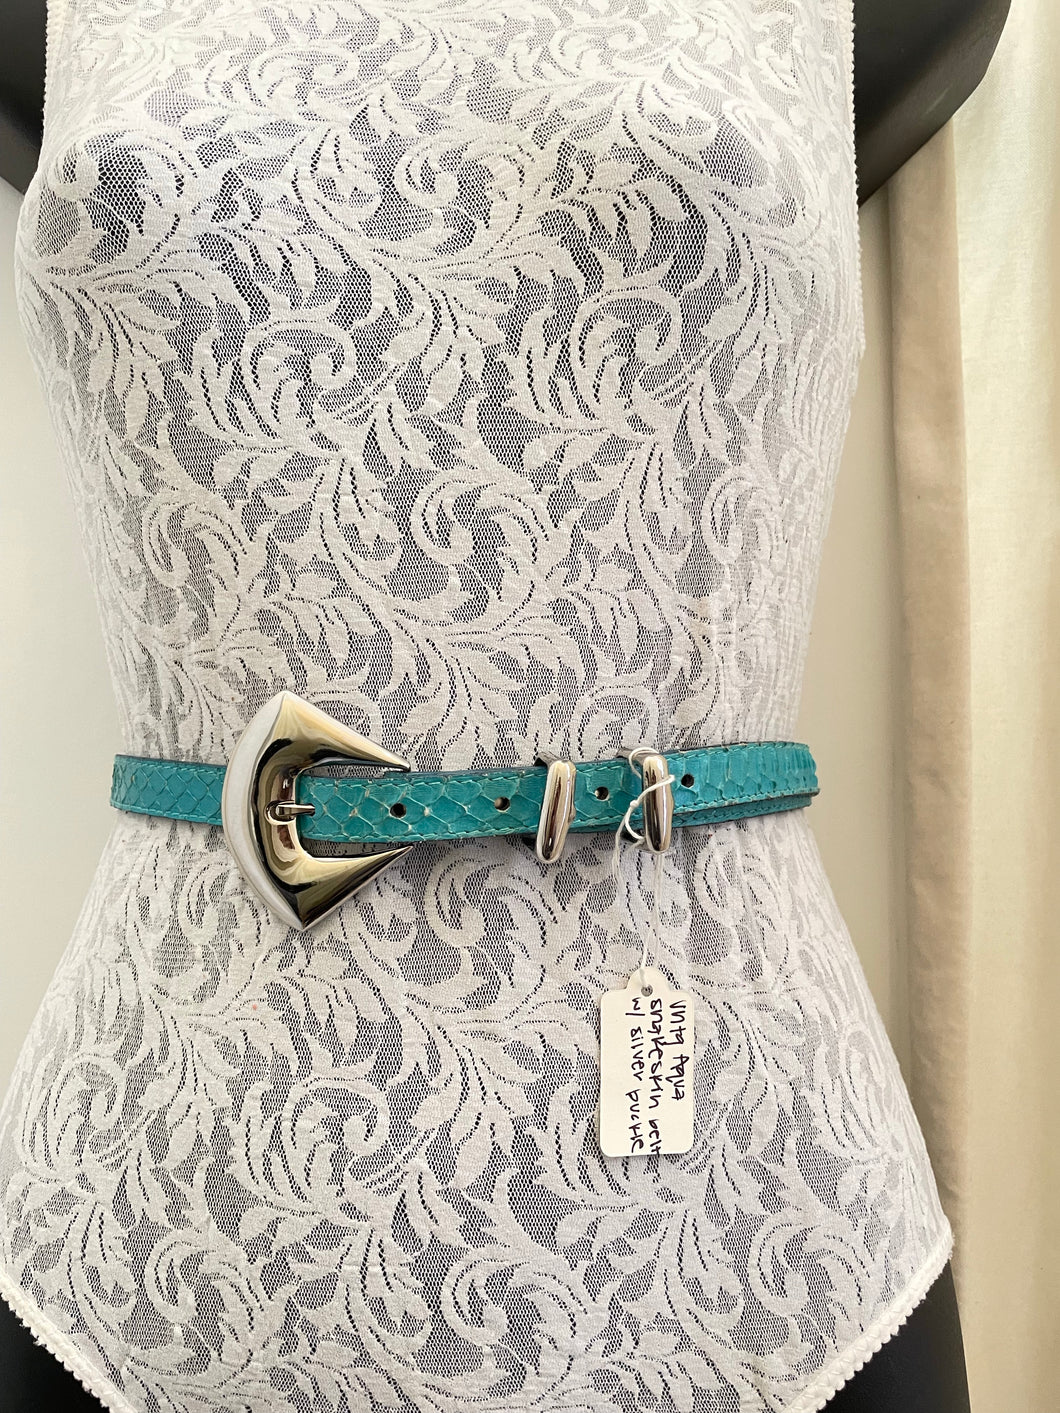 Vintage aqua snakeskin belt with silver buckle